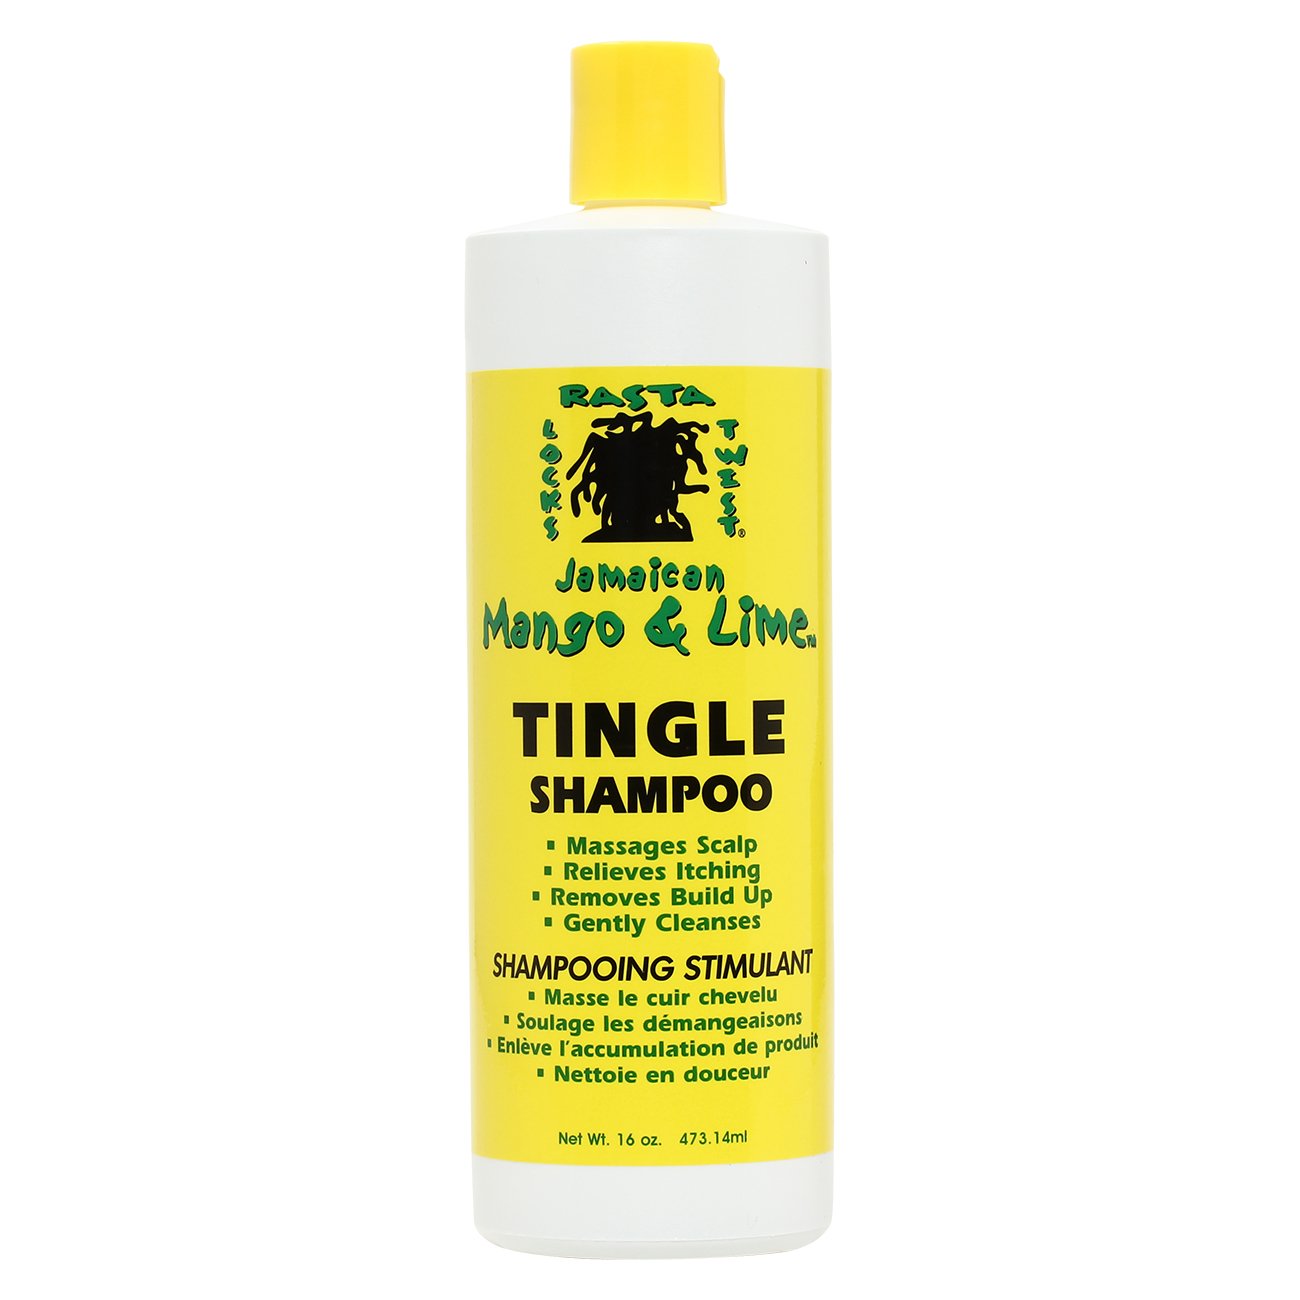 Jamaican Mango And Lime Tingle Shampoo, 16 Ounce